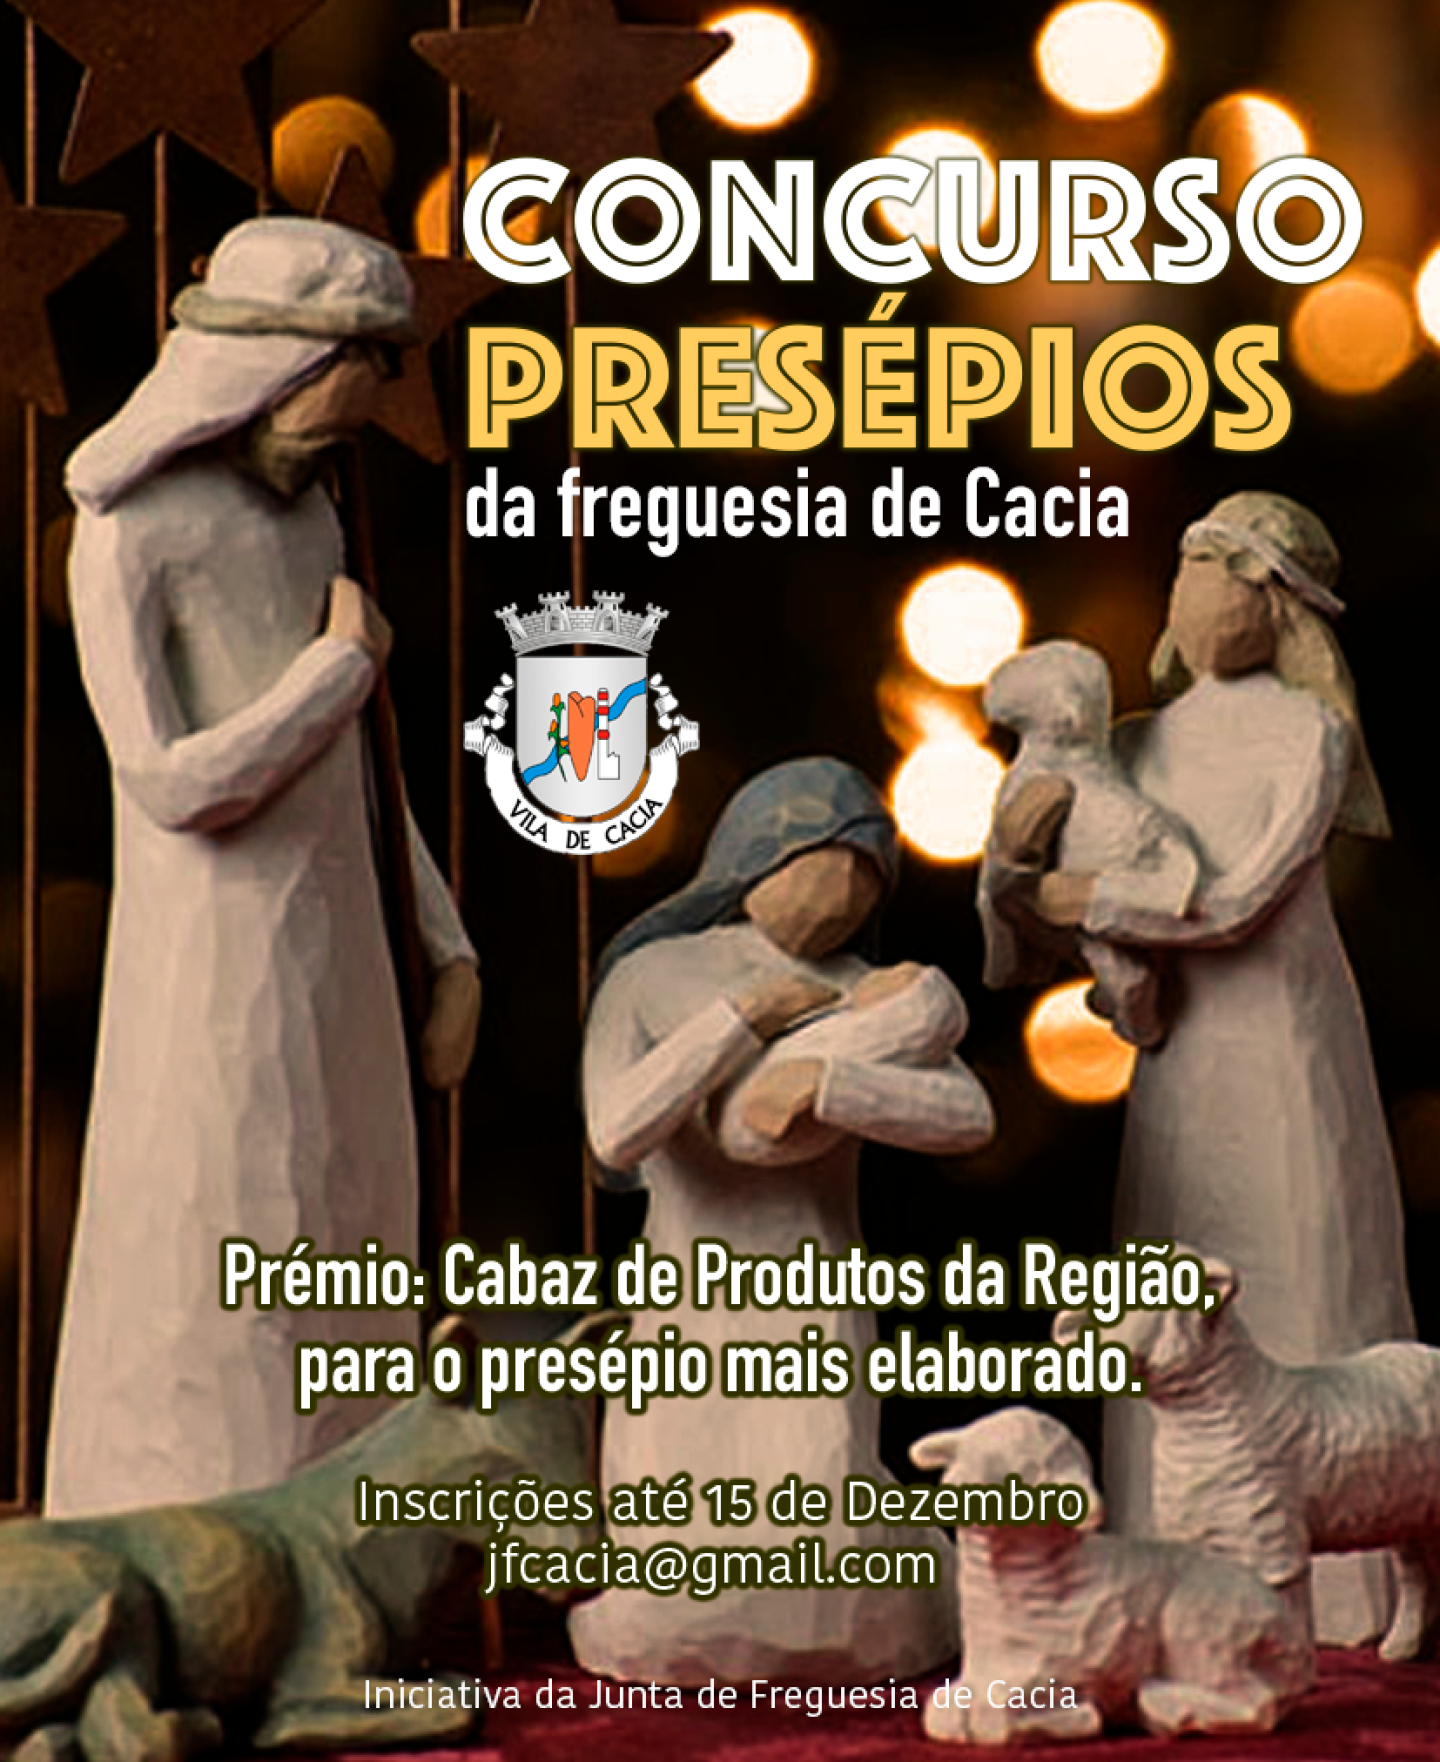 CONCURSO PRESEPIOS